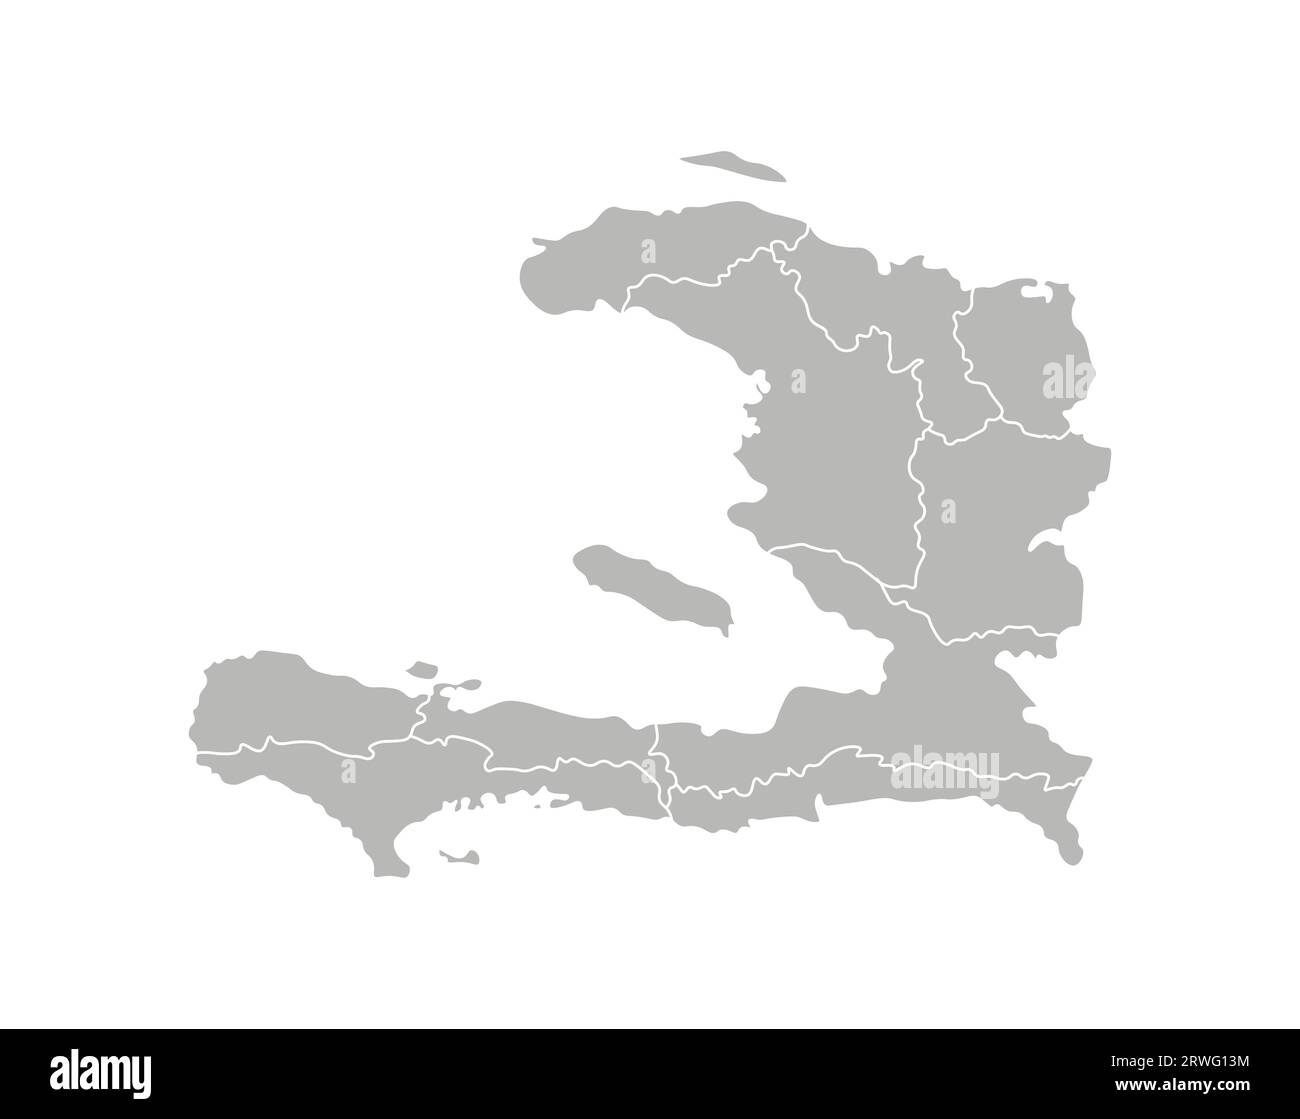 Illustration isolée vectorielle de carte administrative simplifiée d'Haïti. Frontières des départements (régions). Silhouettes grises. Contour blanc. Illustration de Vecteur